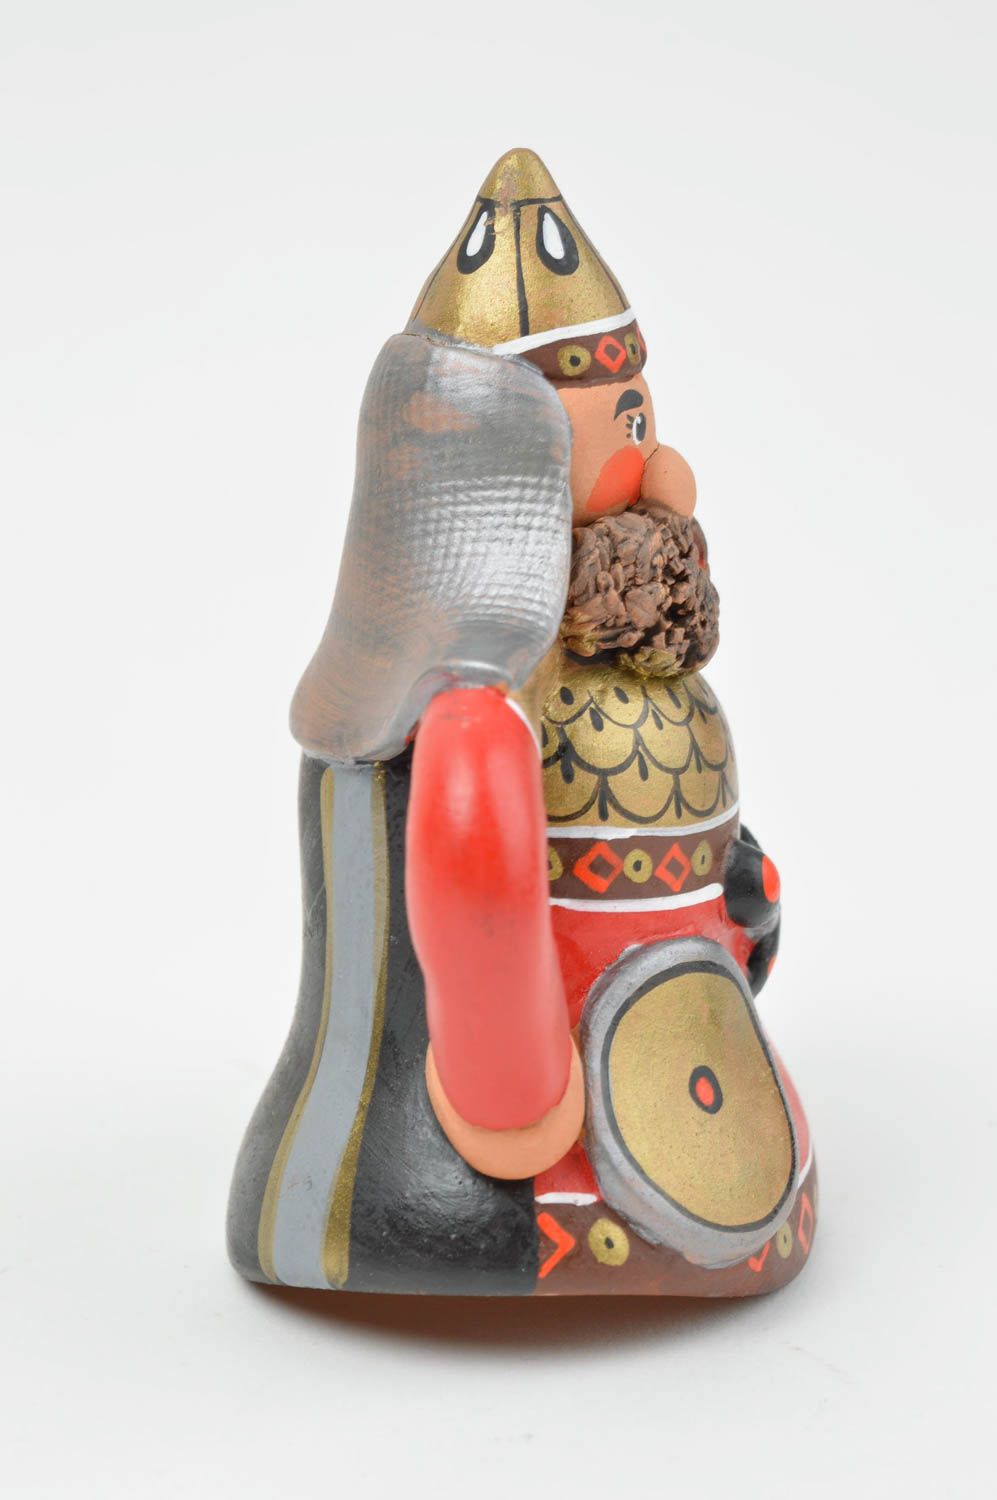 Глиняный колокольчик в виде рыцаря расписанный красками ручной работы необычный фото 2